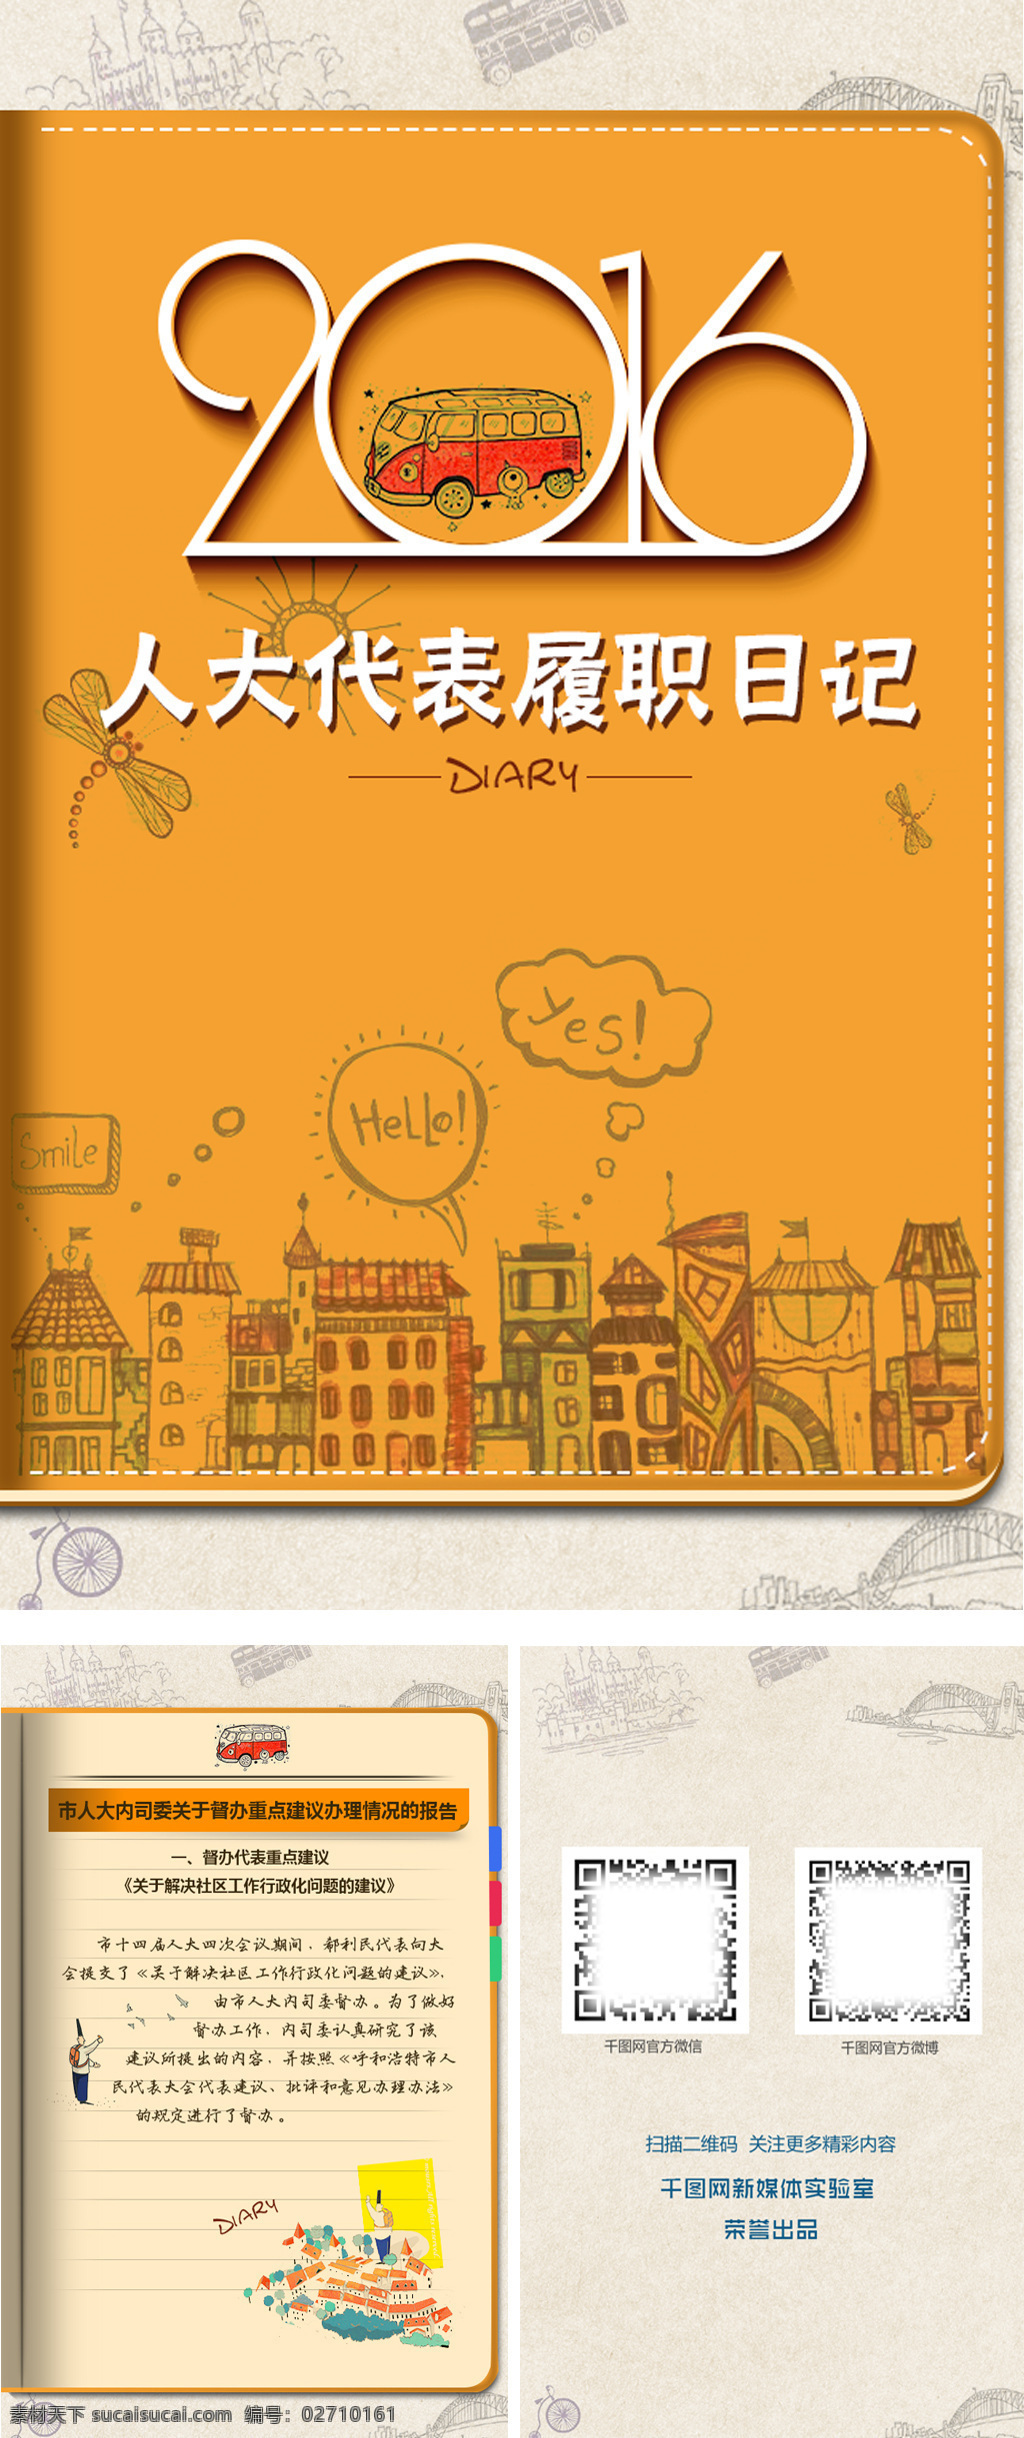 笔记本 翻 页 h5 模板 h5模板 模板设计 插画风格 城市插画 日记本